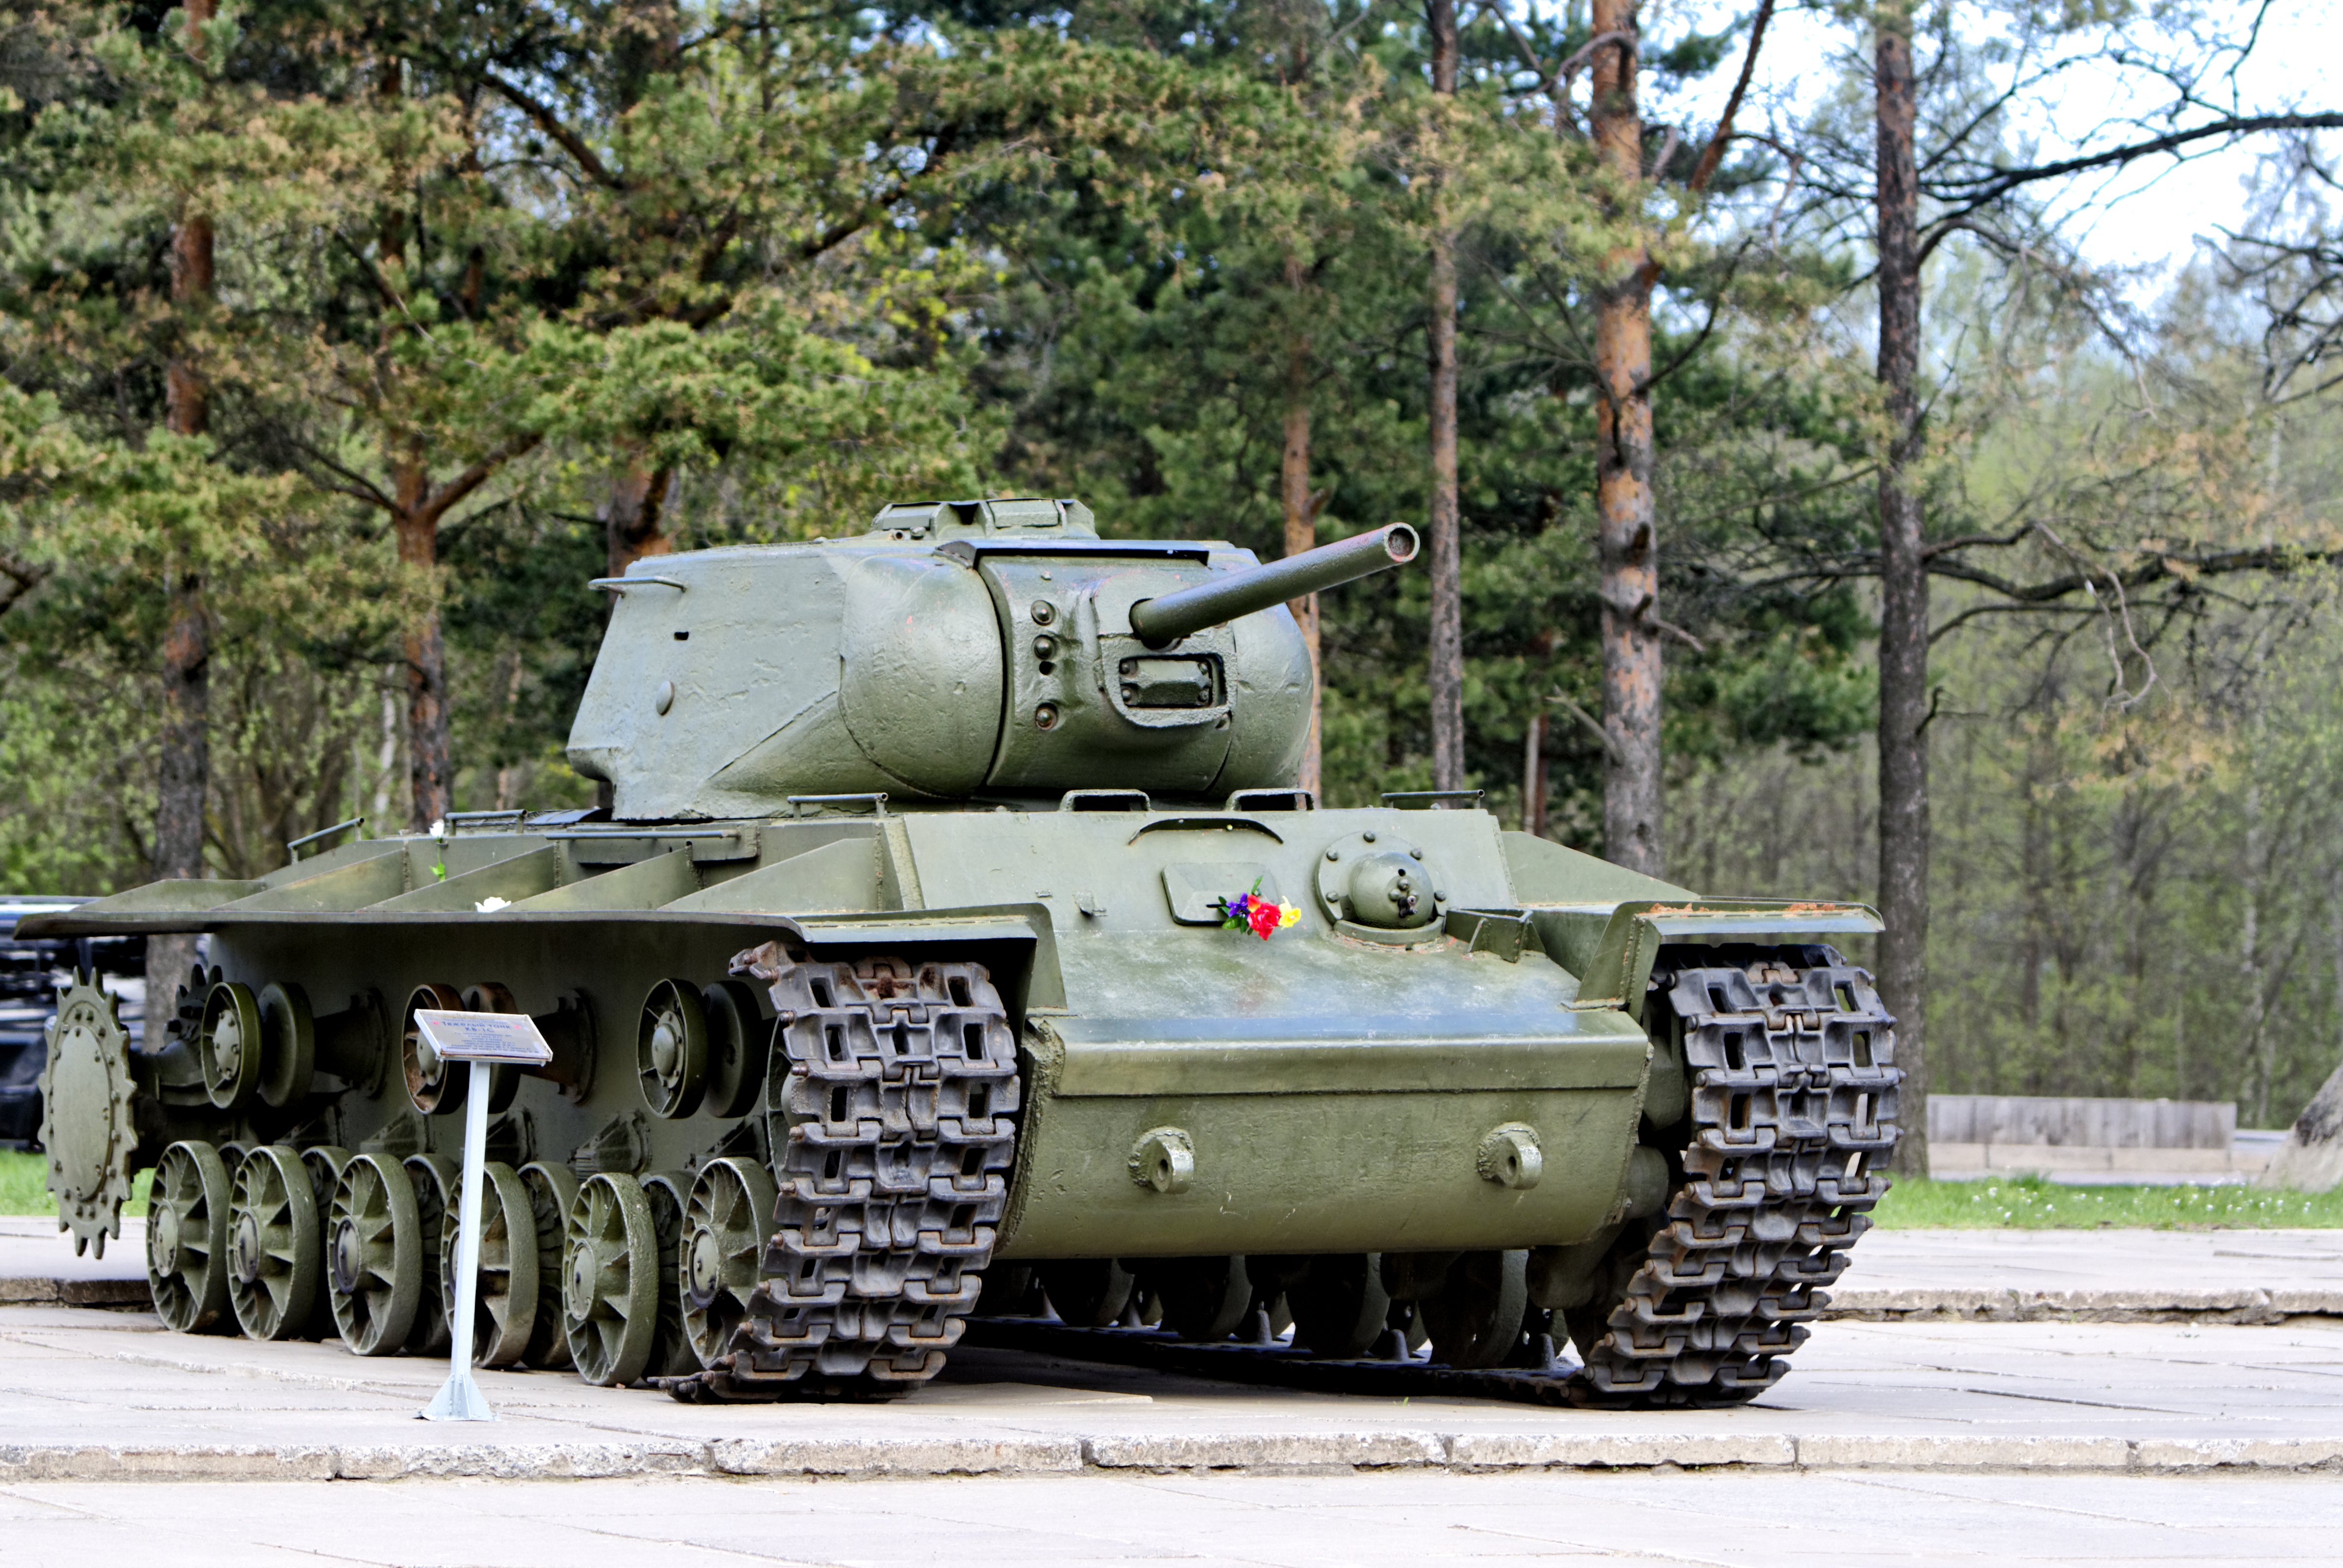 Советский тяжелый танк кв-1